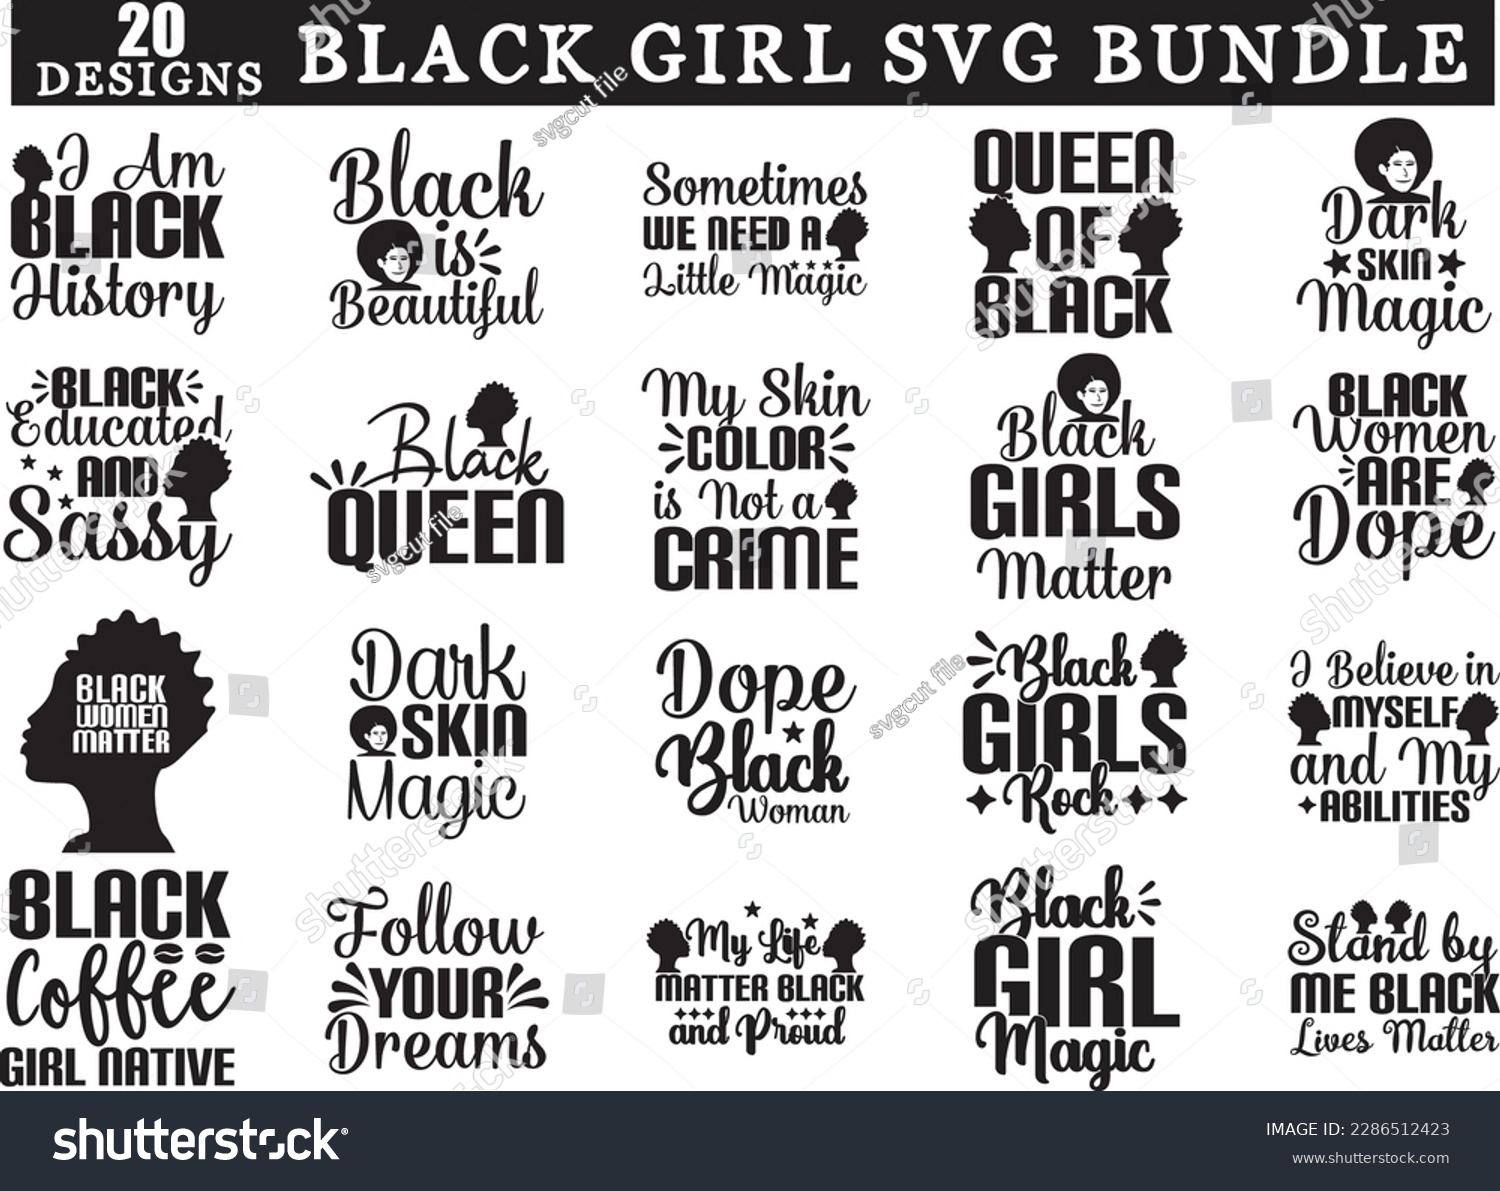 SVG of black girl svg bundle, black girl svg design, black girl svg svg